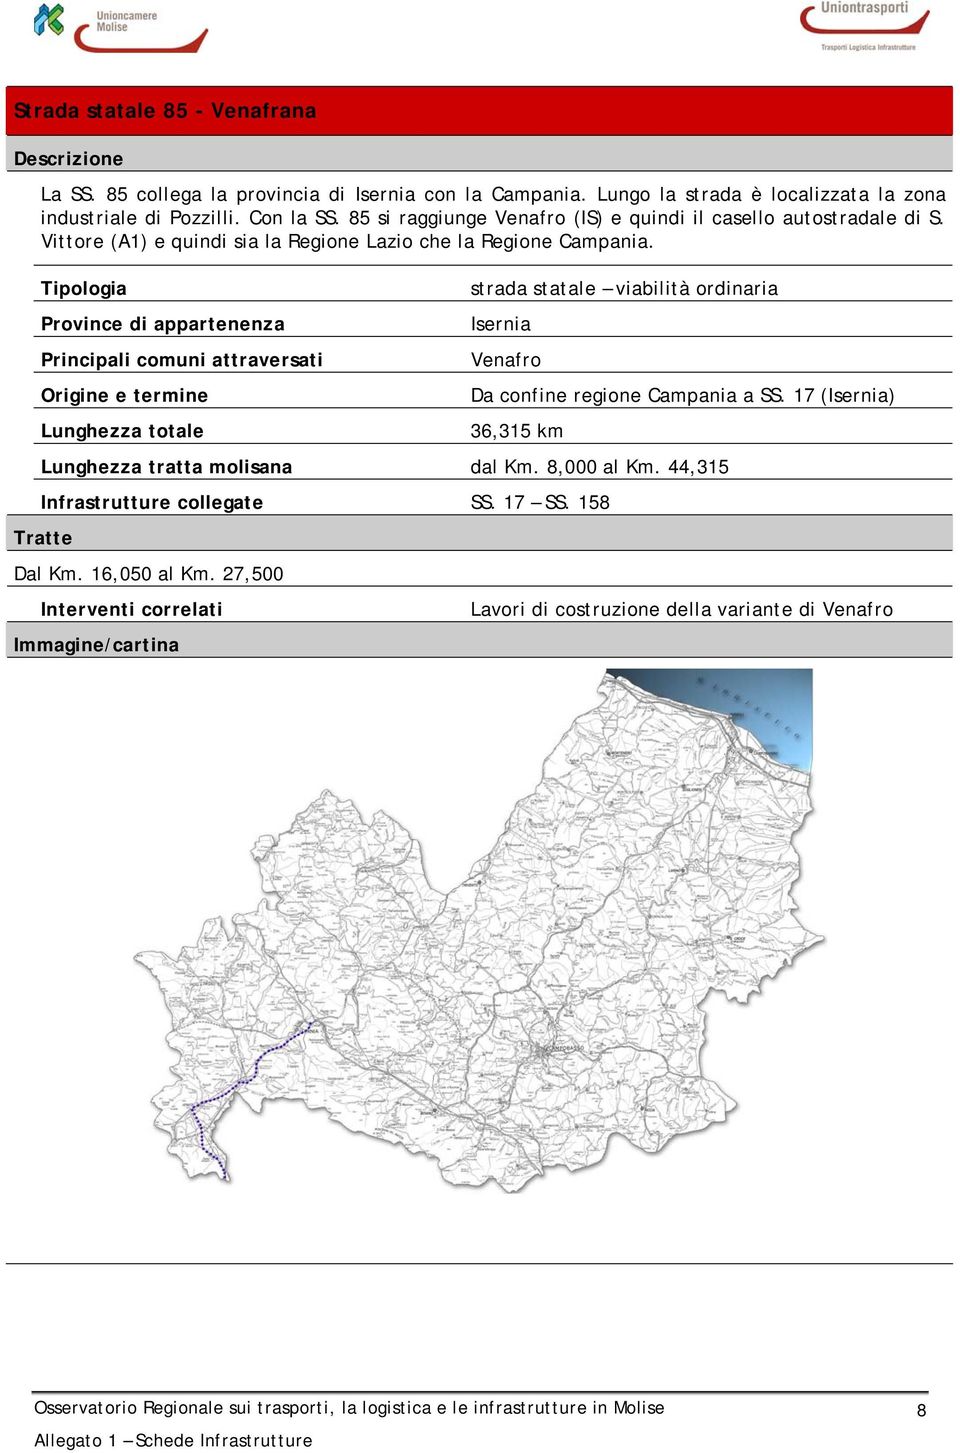 Tipologia Province di appartenenza Principali comuni attraversati Origine e termine Lunghezza totale strada statale viabilità ordinaria Isernia Venafro Da confine regione Campania a SS.